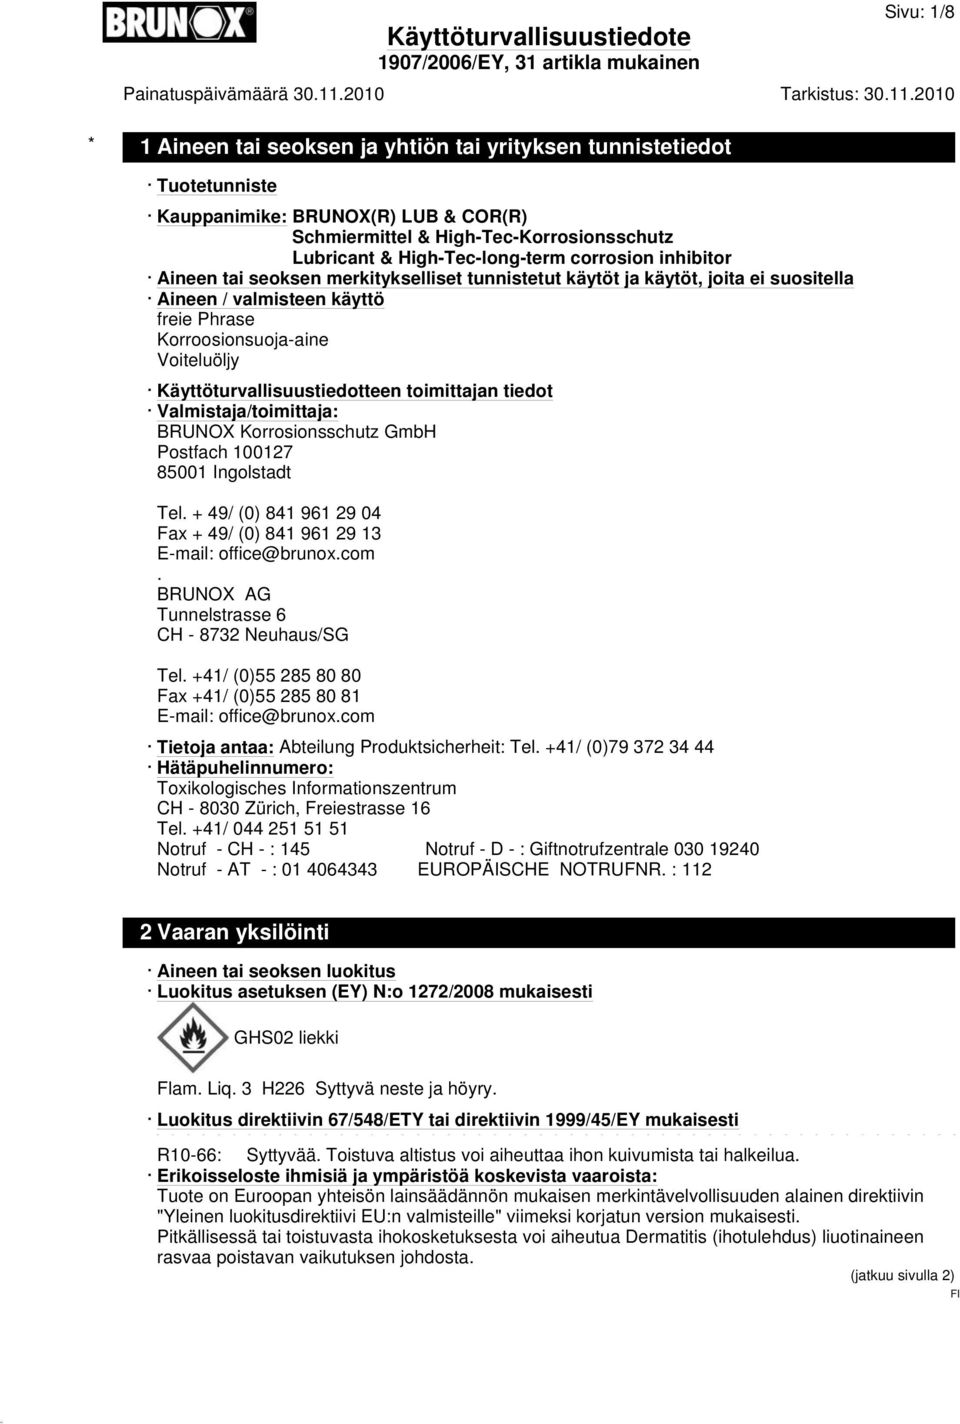 Käyttöturvallisuustiedotteen toimittajan tiedot Valmistaja/toimittaja: BRUNOX Korrosionsschutz GmbH Postfach 100127 85001 Ingolstadt Tel.